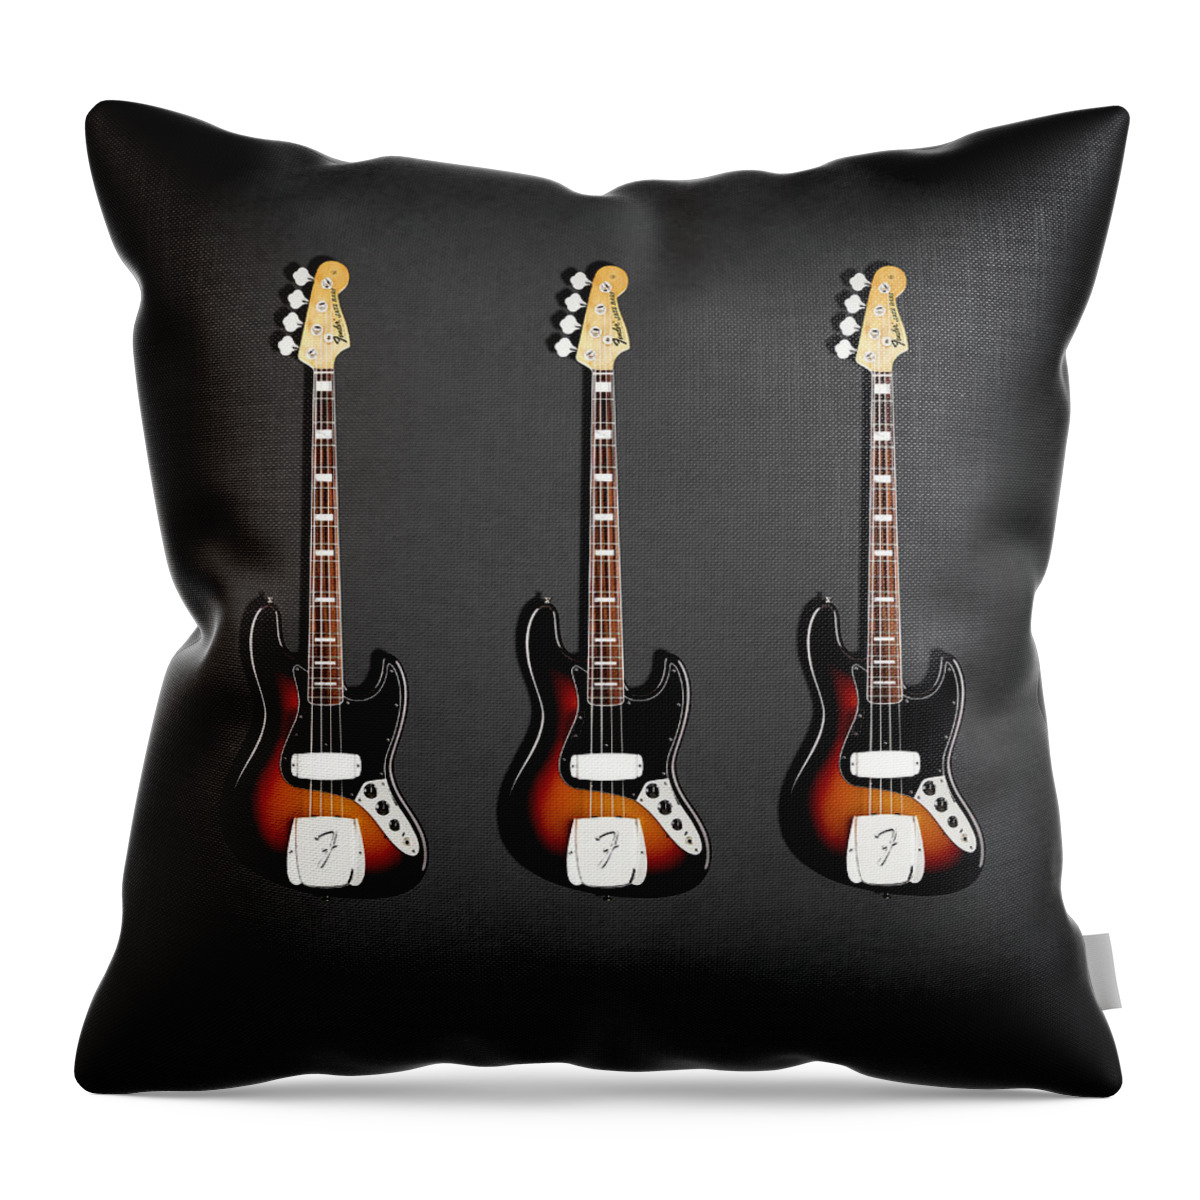 Fender Jazzbass Throw Pillow featuring the photograph Fender Jazzbass 74 by Mark Rogan